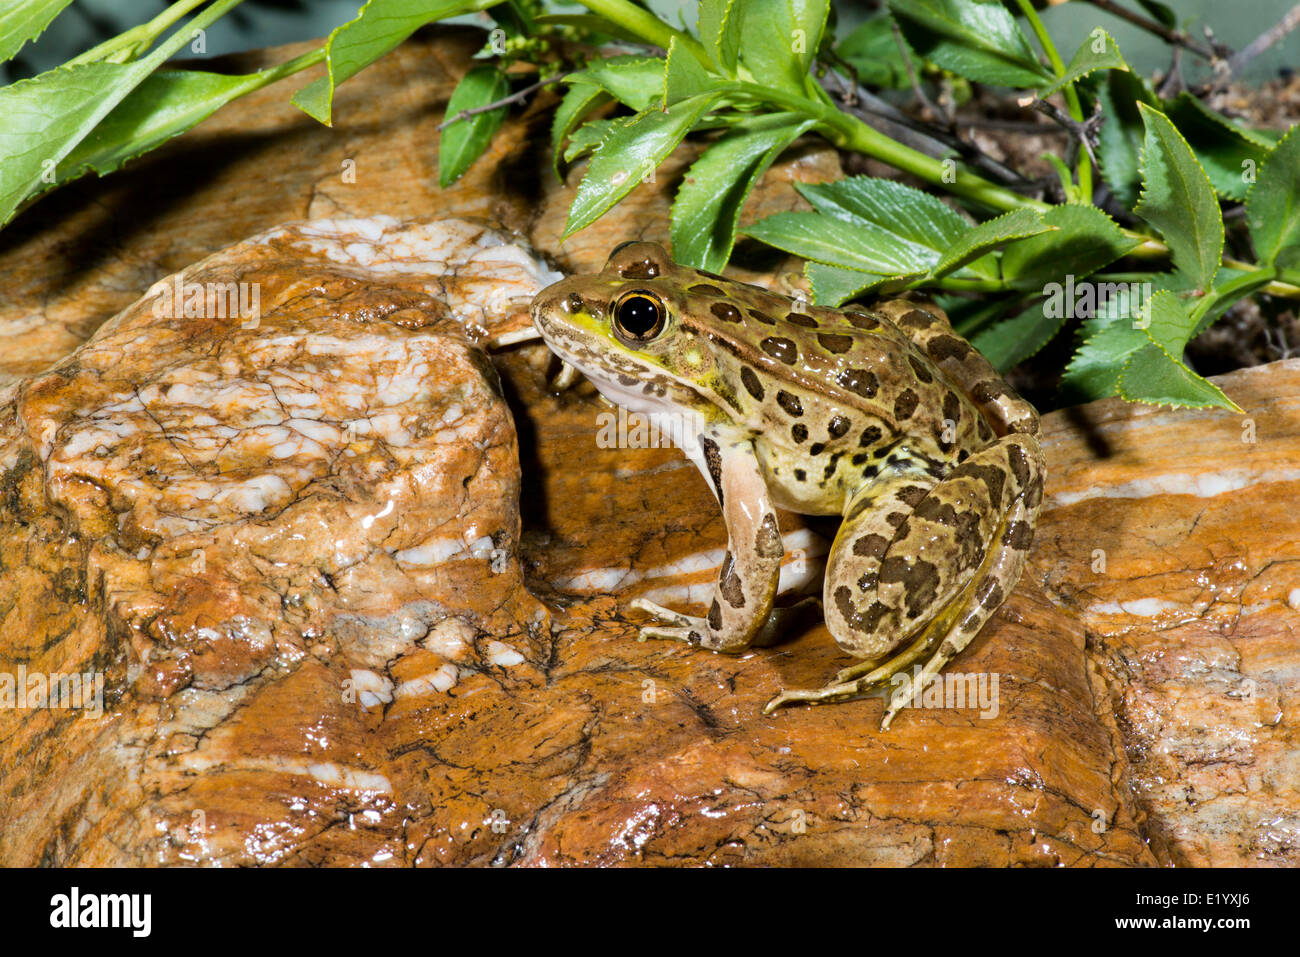 La grenouille léopard de plaine Lithobates yavapaiensis Catalina, comté de Pima, Arizona, United States 9 juin des profils des Ranidés Banque D'Images